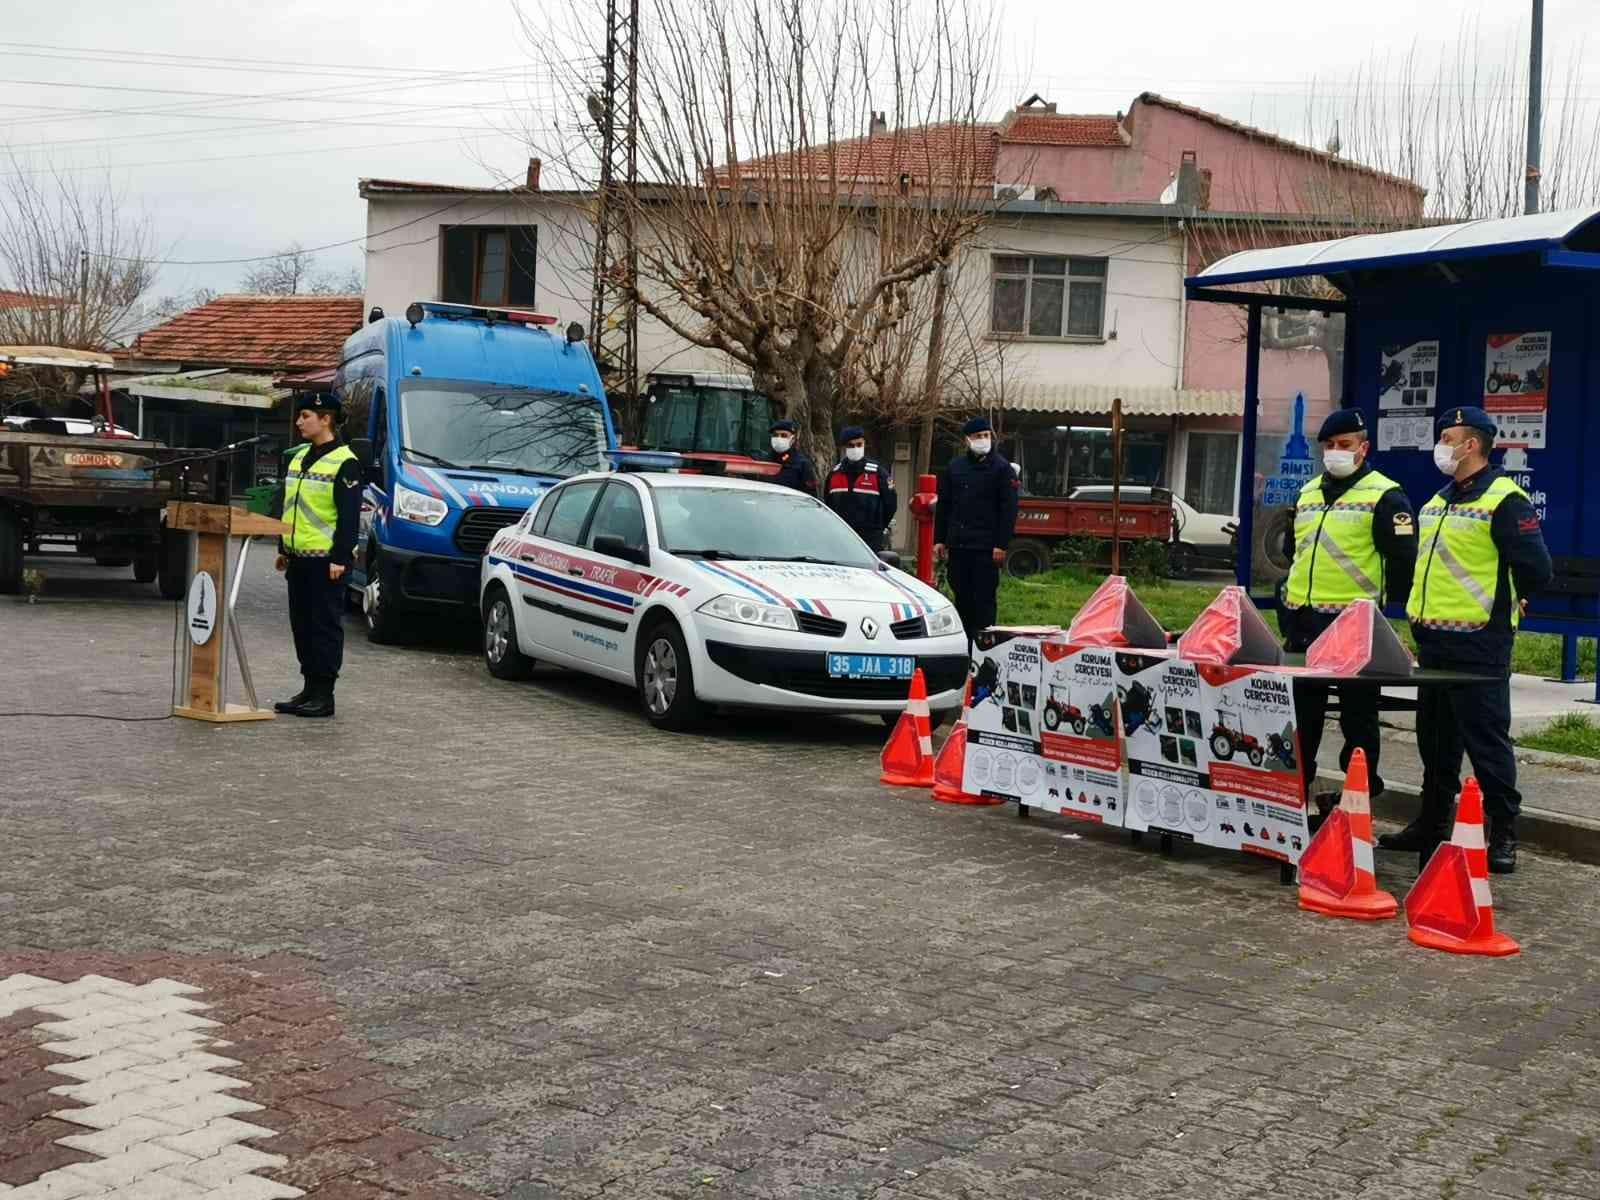 Bergama’da traktör sürücülerine reflektör dağıtılarak önemi anlatıldı #izmir